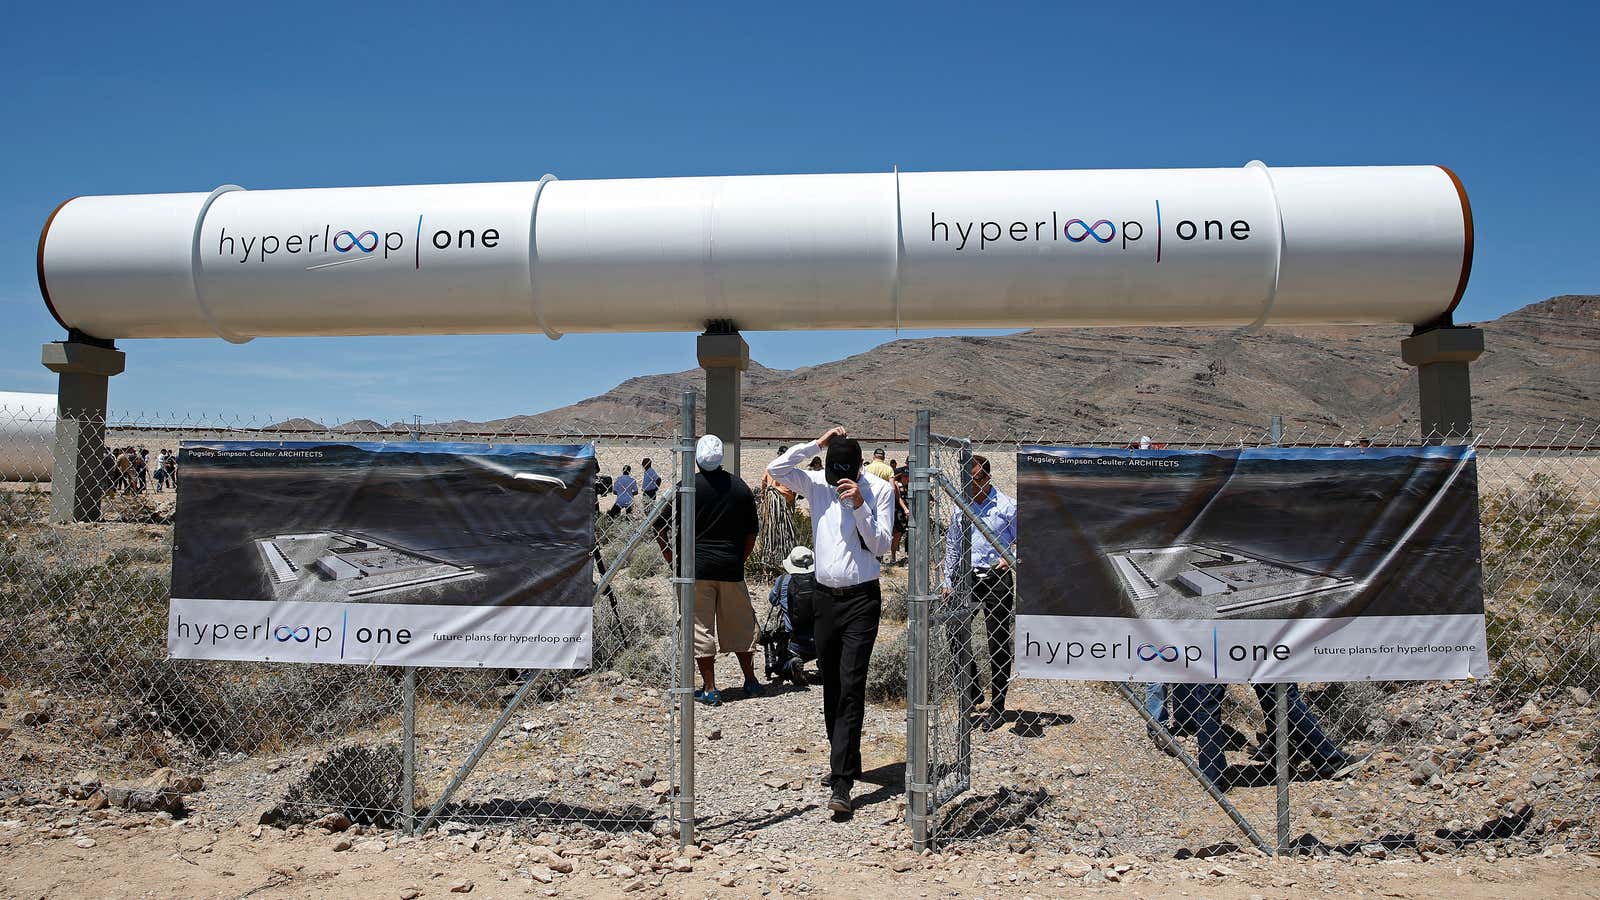 Virgin Hyperloop One’s facility just north of Las Vegas.